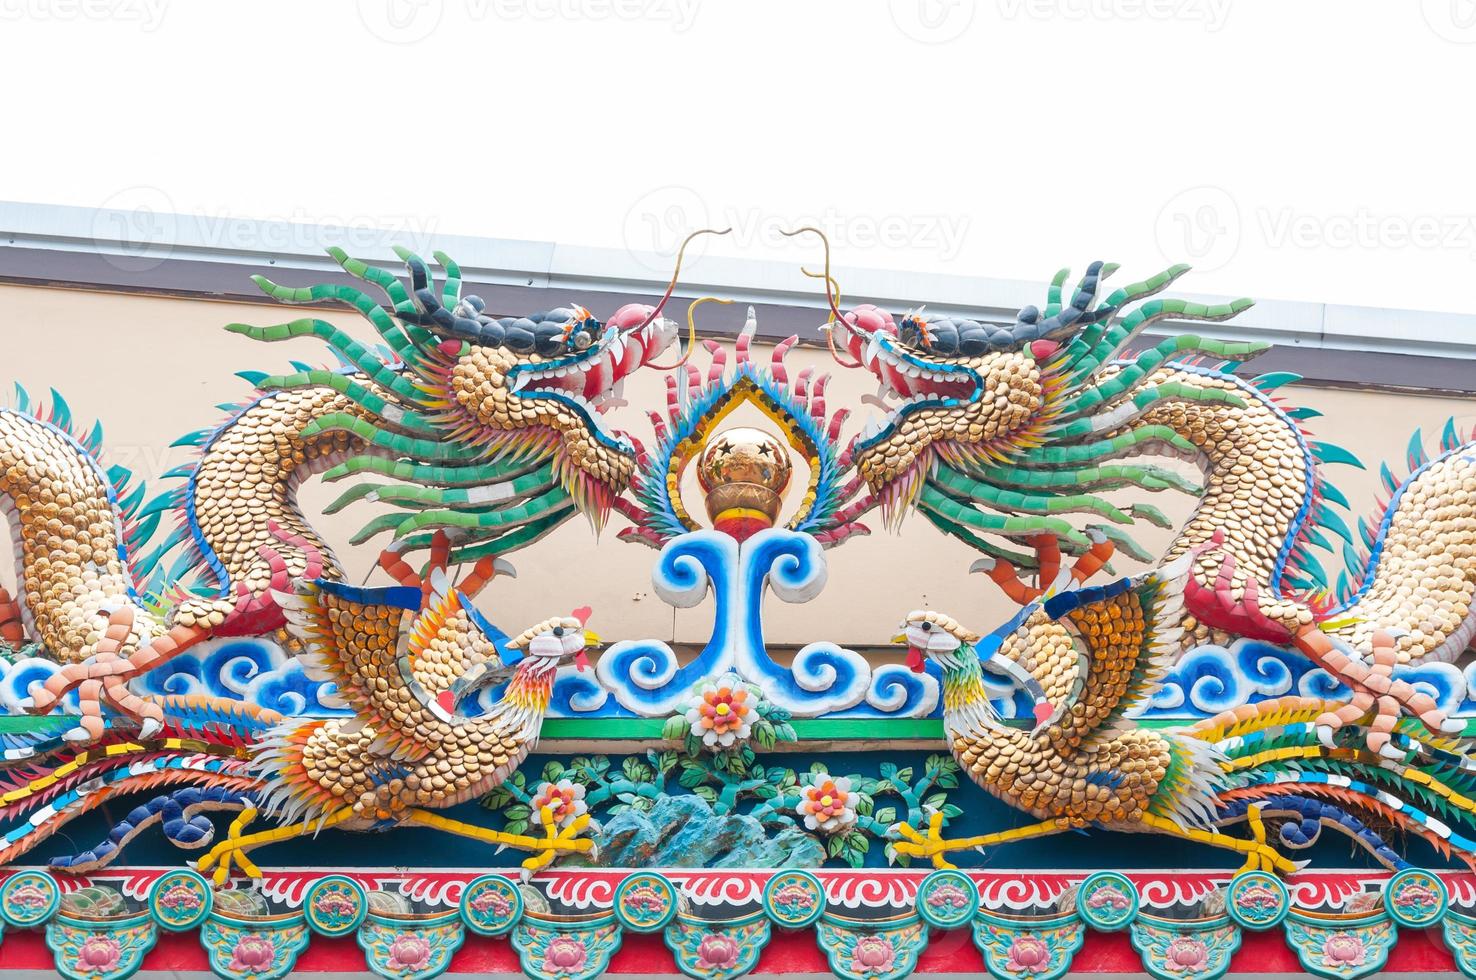 statue de dragon sur le toit du temple chinois, architecture orientale, dragons jumeaux sur le toit photo